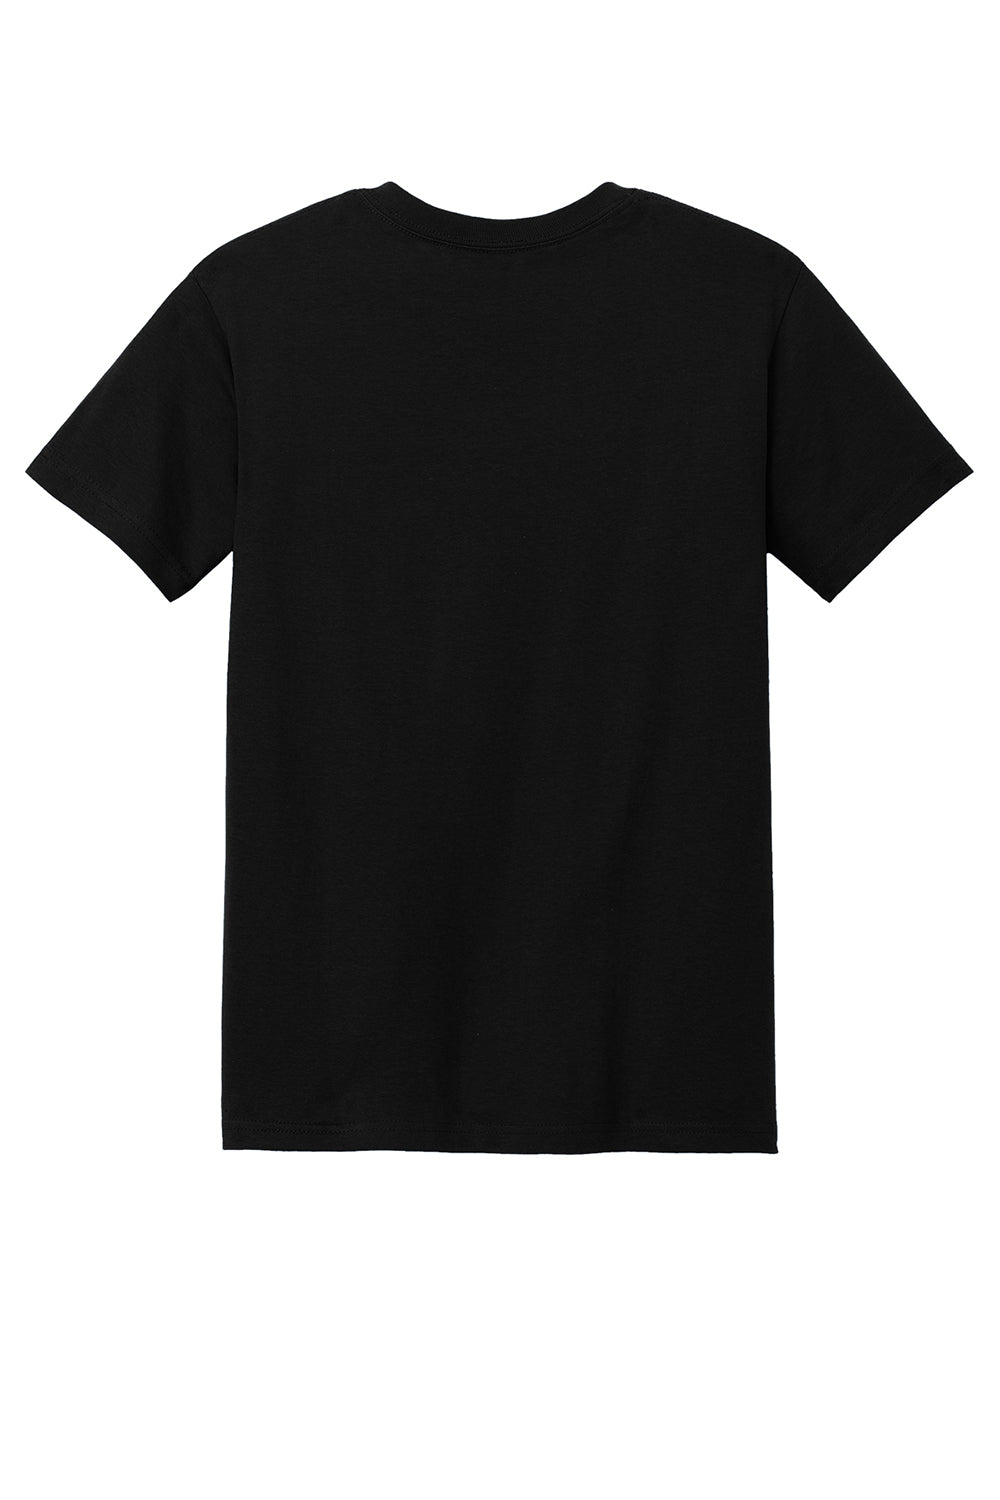 American Apparel 1301/AL1301 Mens Short Sleeve Crewneck T-Shirt Black Flat Back